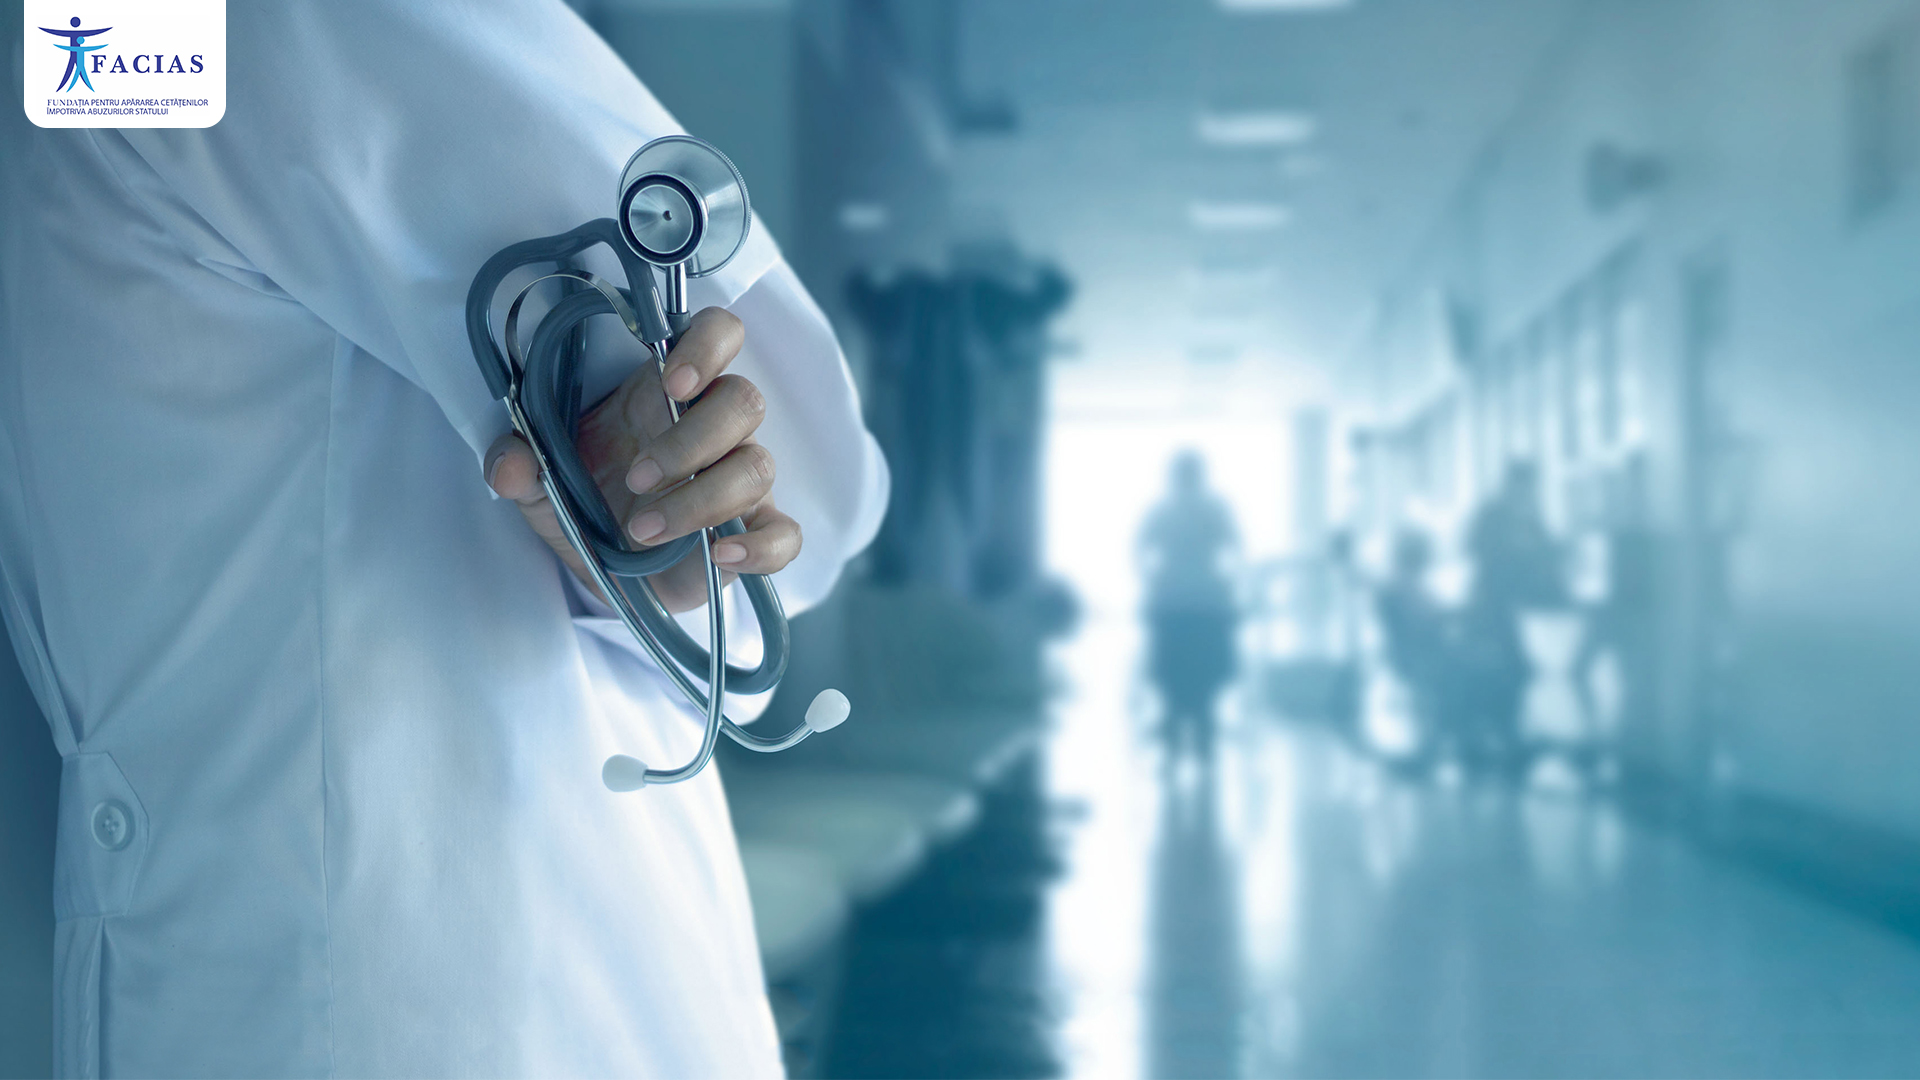 , FACIAS solicită intervenția urgentă a Ministerului Sănătății în urma unui caz dramatic în sistemul medical, FACIAS